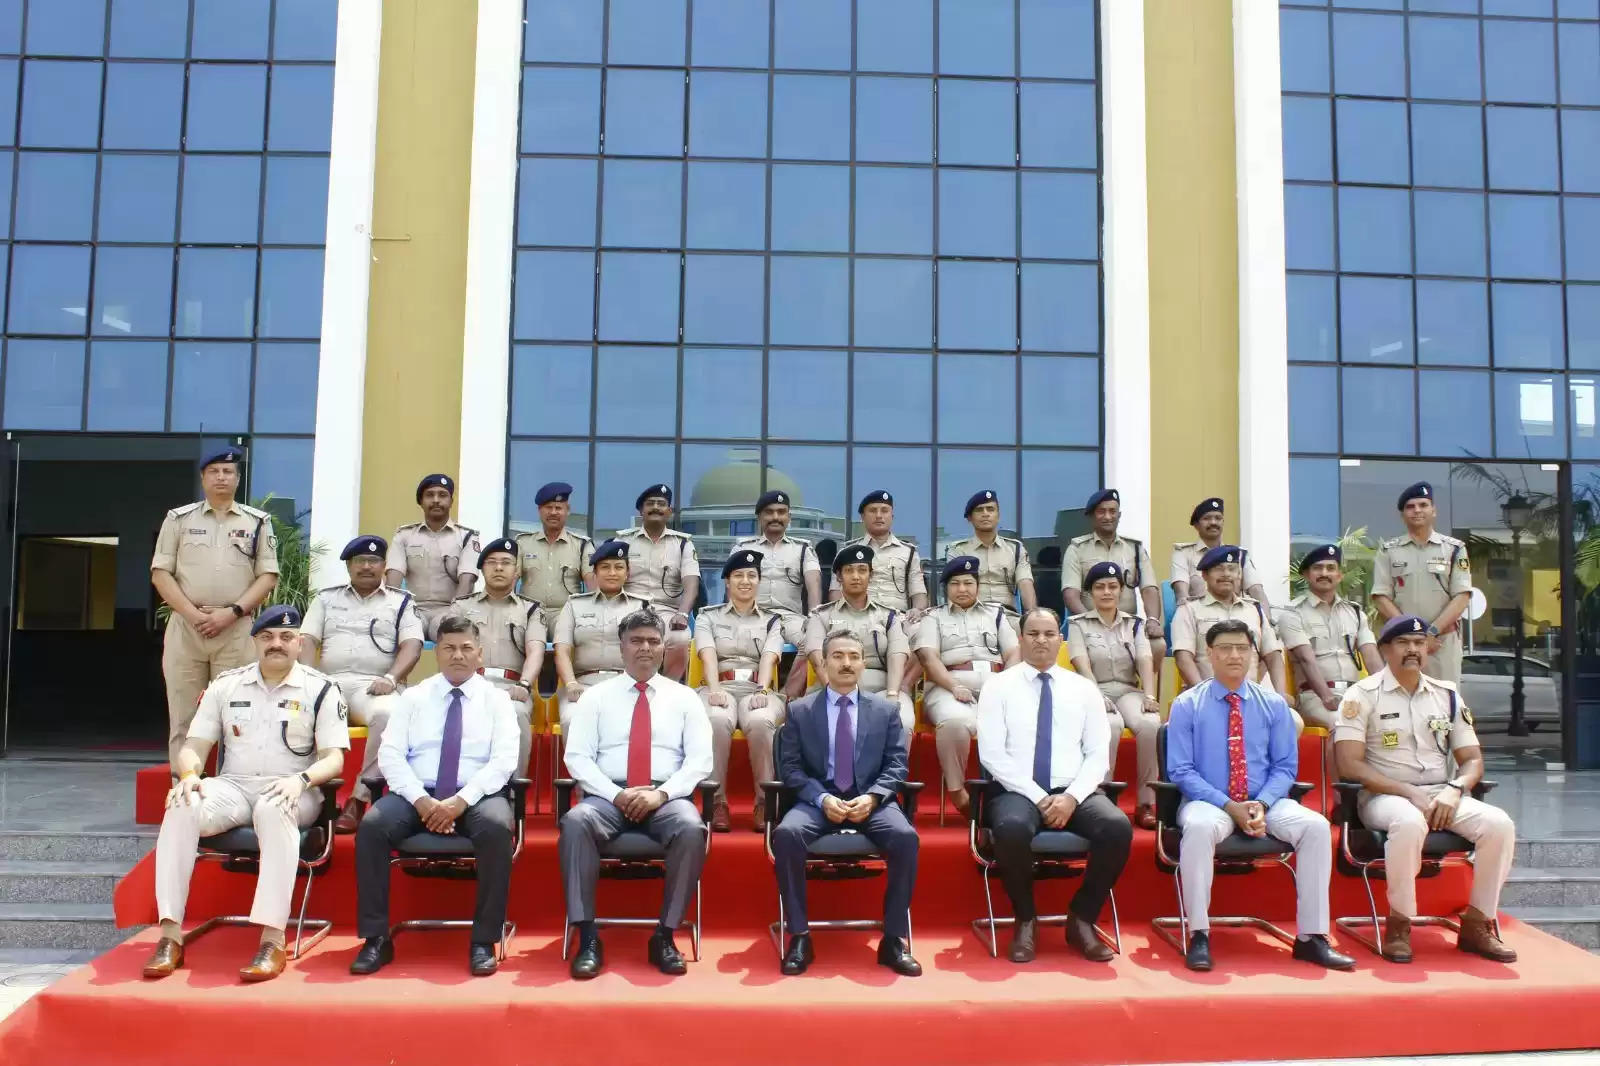 केंद्रीय पुलिस प्रशिक्षण अकादमी, भोपाल ने नव नियुक्त पुलिस उपाधीक्षकों के लिए 4 सप्ताह का विशेषीकृत प्रशिक्षण कार्यक्रम शुरू किया।